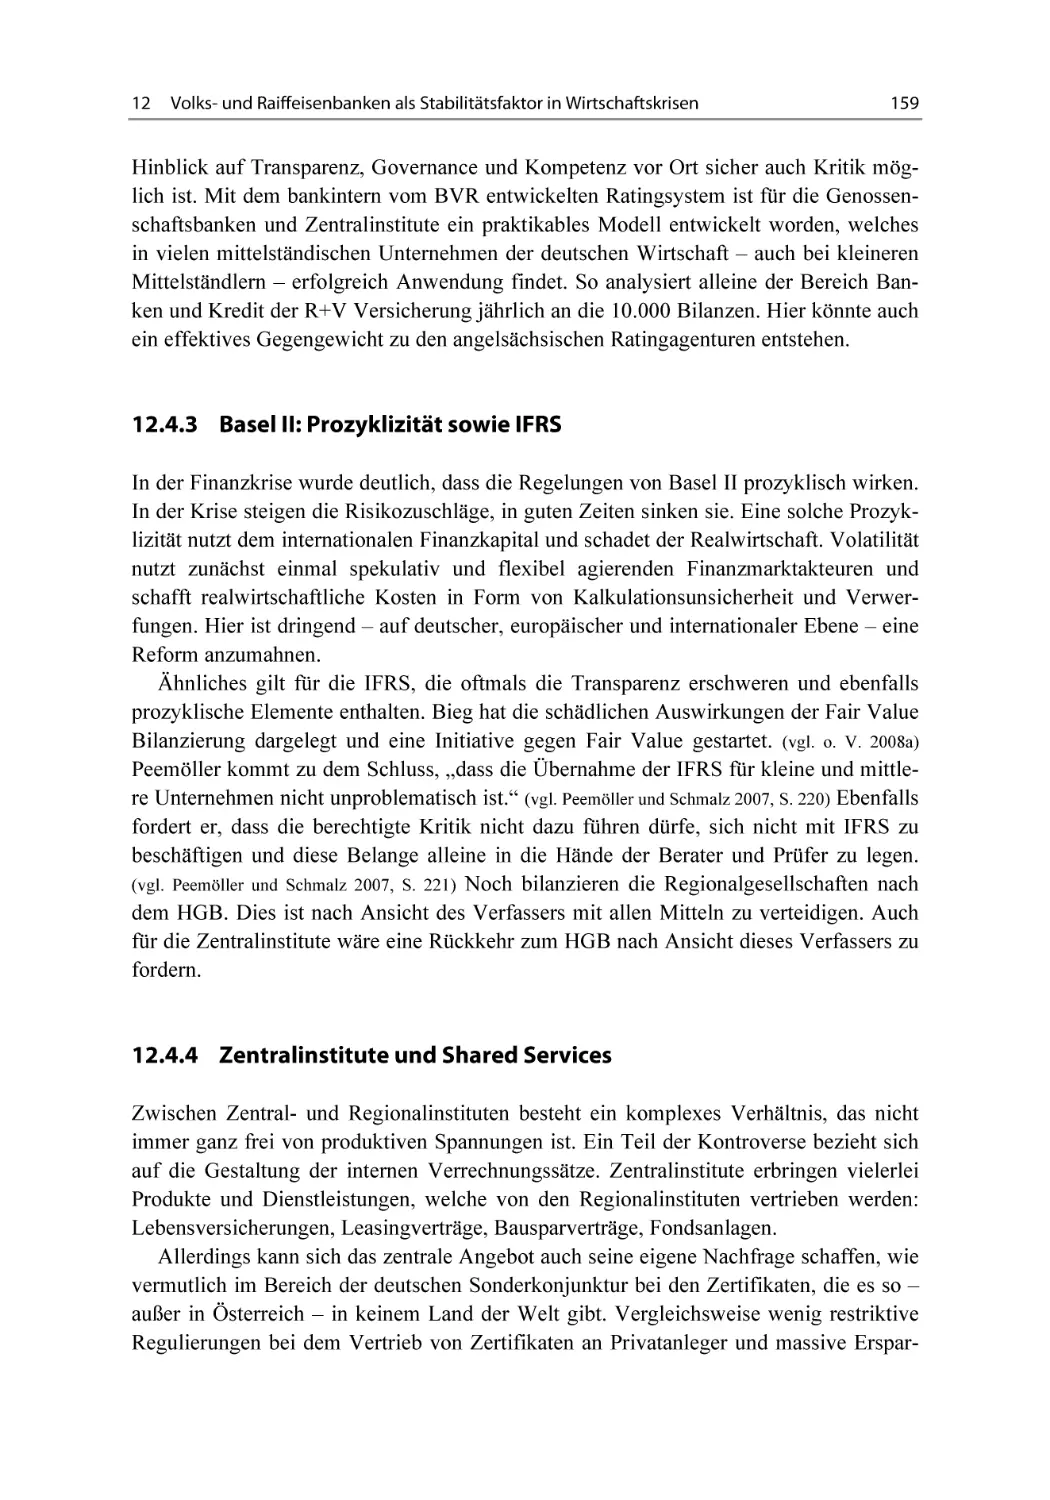 12.4.3 Basel II
12.4.4 Zentralinstitute und Shared Services